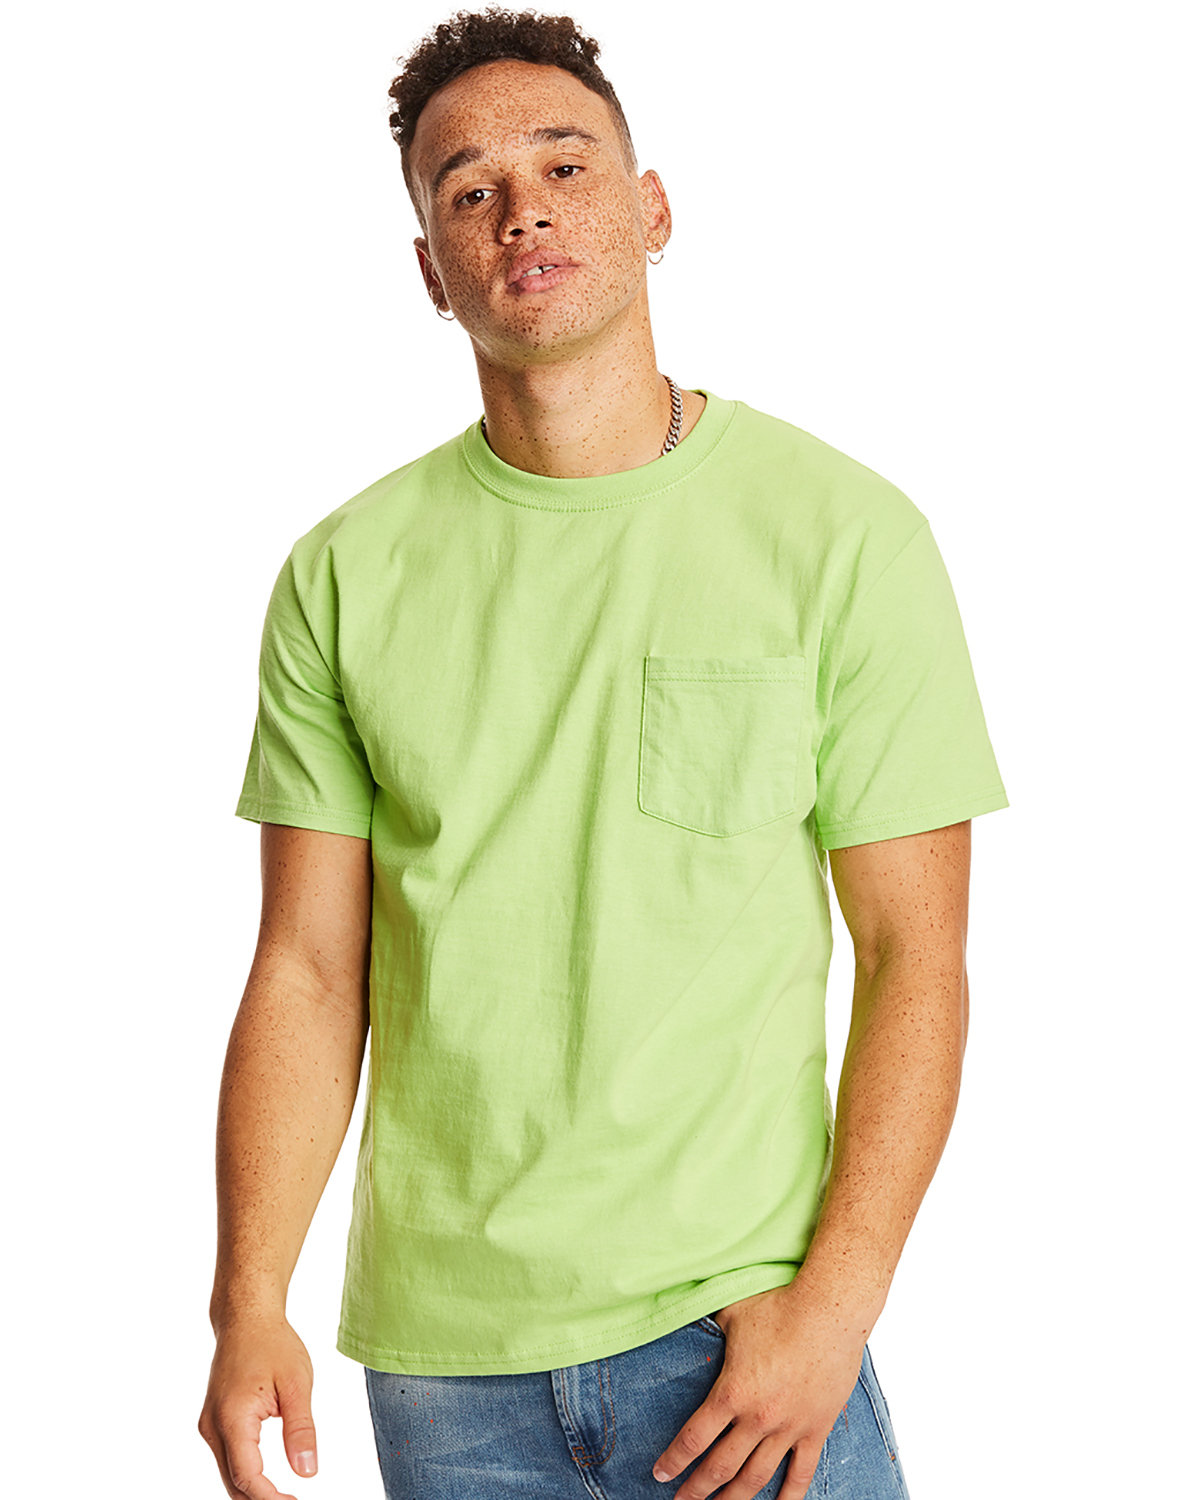 Hanes Men's Authentic-T Pocket T-Shirt lime 